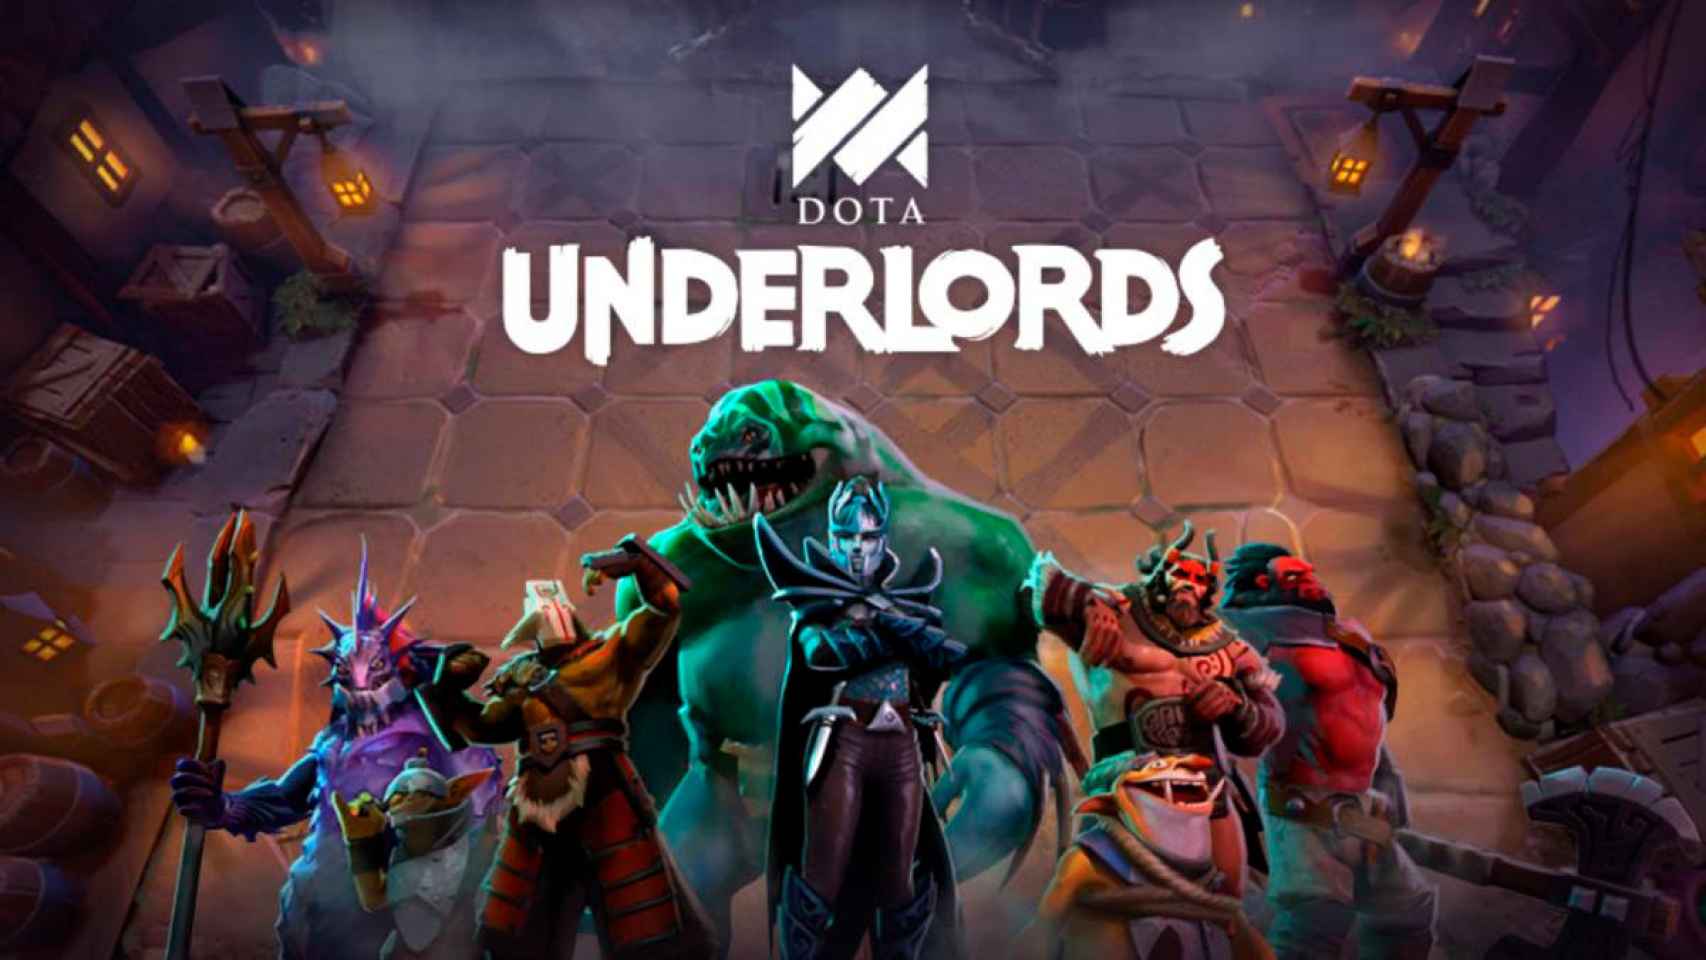 Descarga ya Dota Underlords para Android, el nuevo juego de Valve